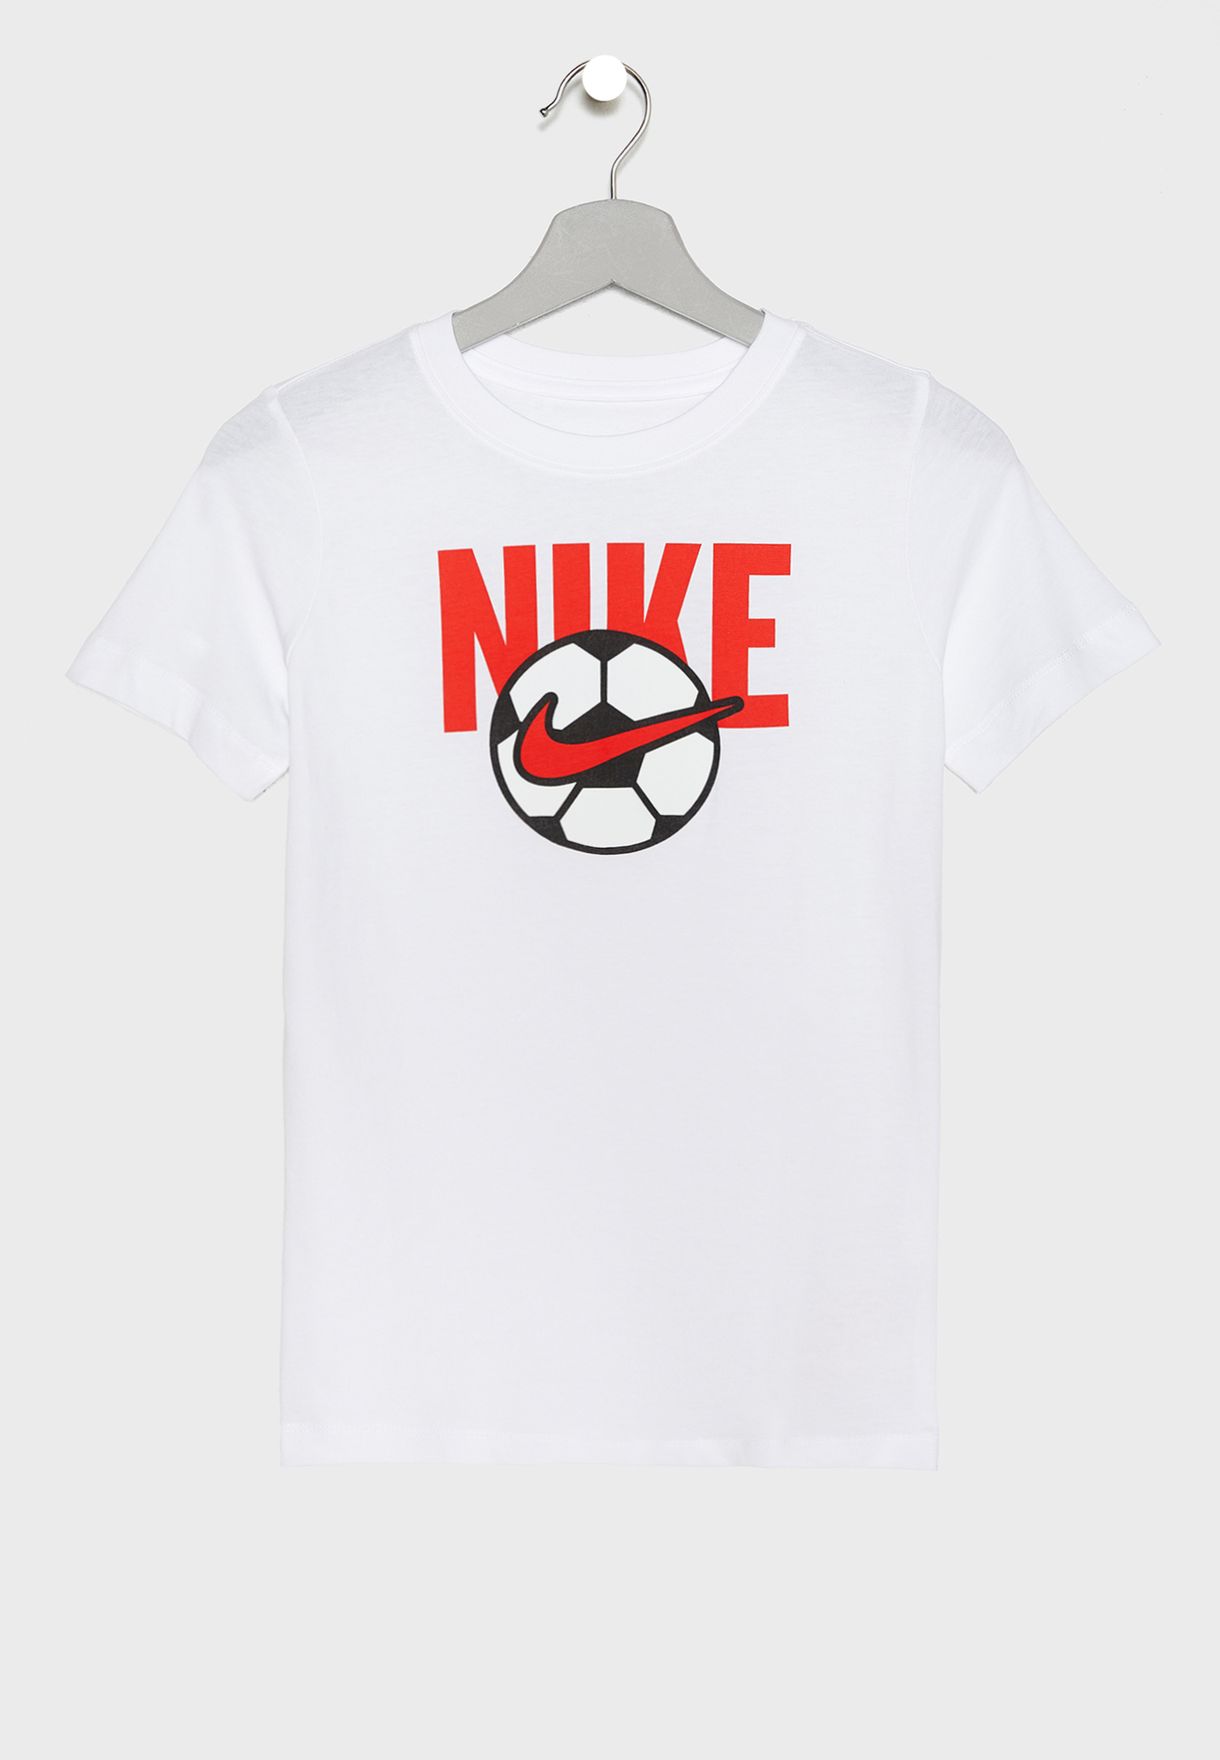 white nike soccer ball